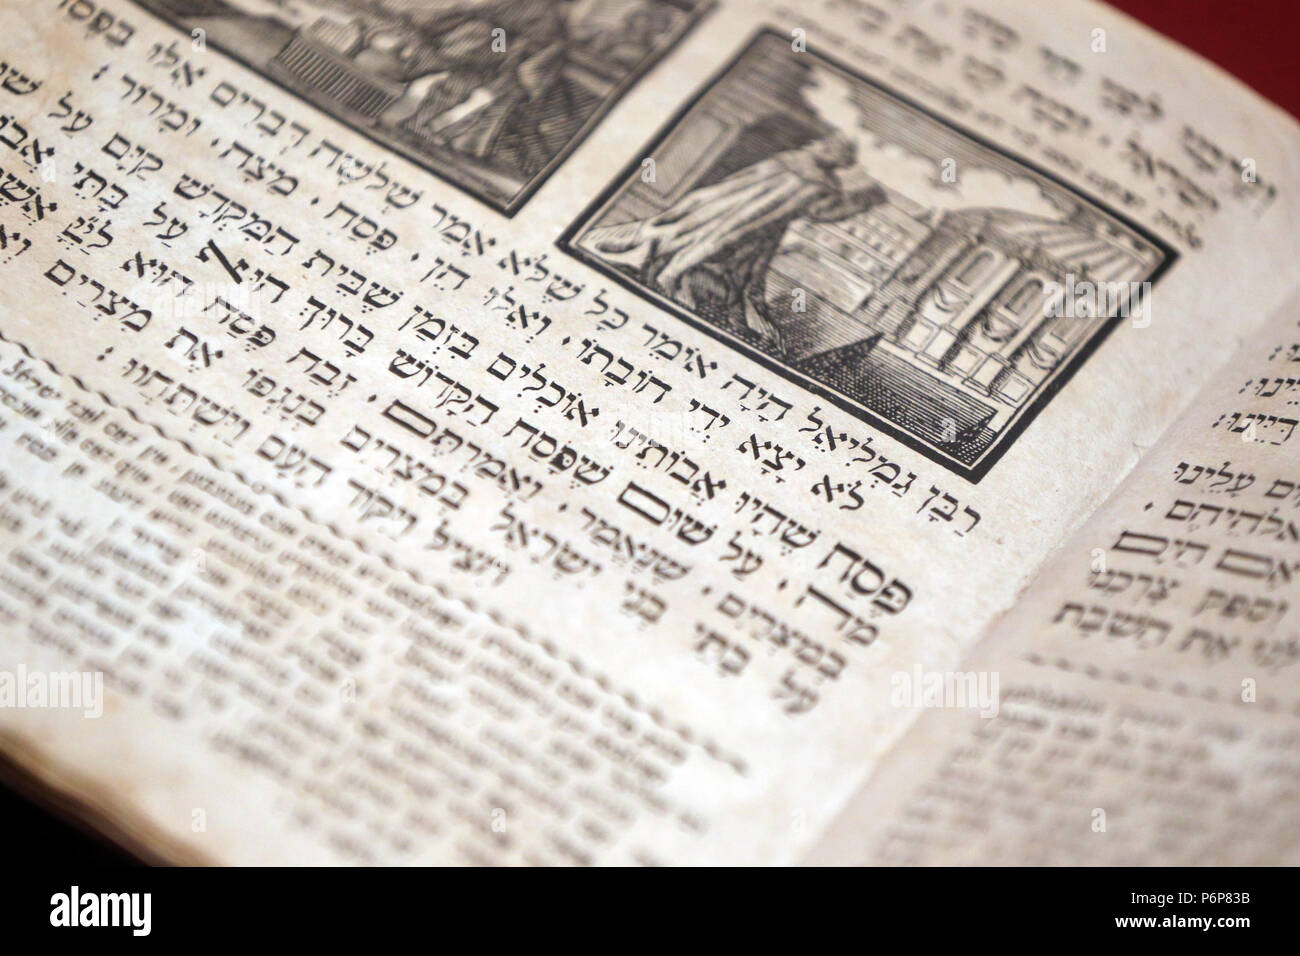 Das Jüdische Museum der Schweiz. Basel. Haggada. Einen jüdischen Text vorlegen, in dem die Ordnung des Passah Seder. Stockfoto